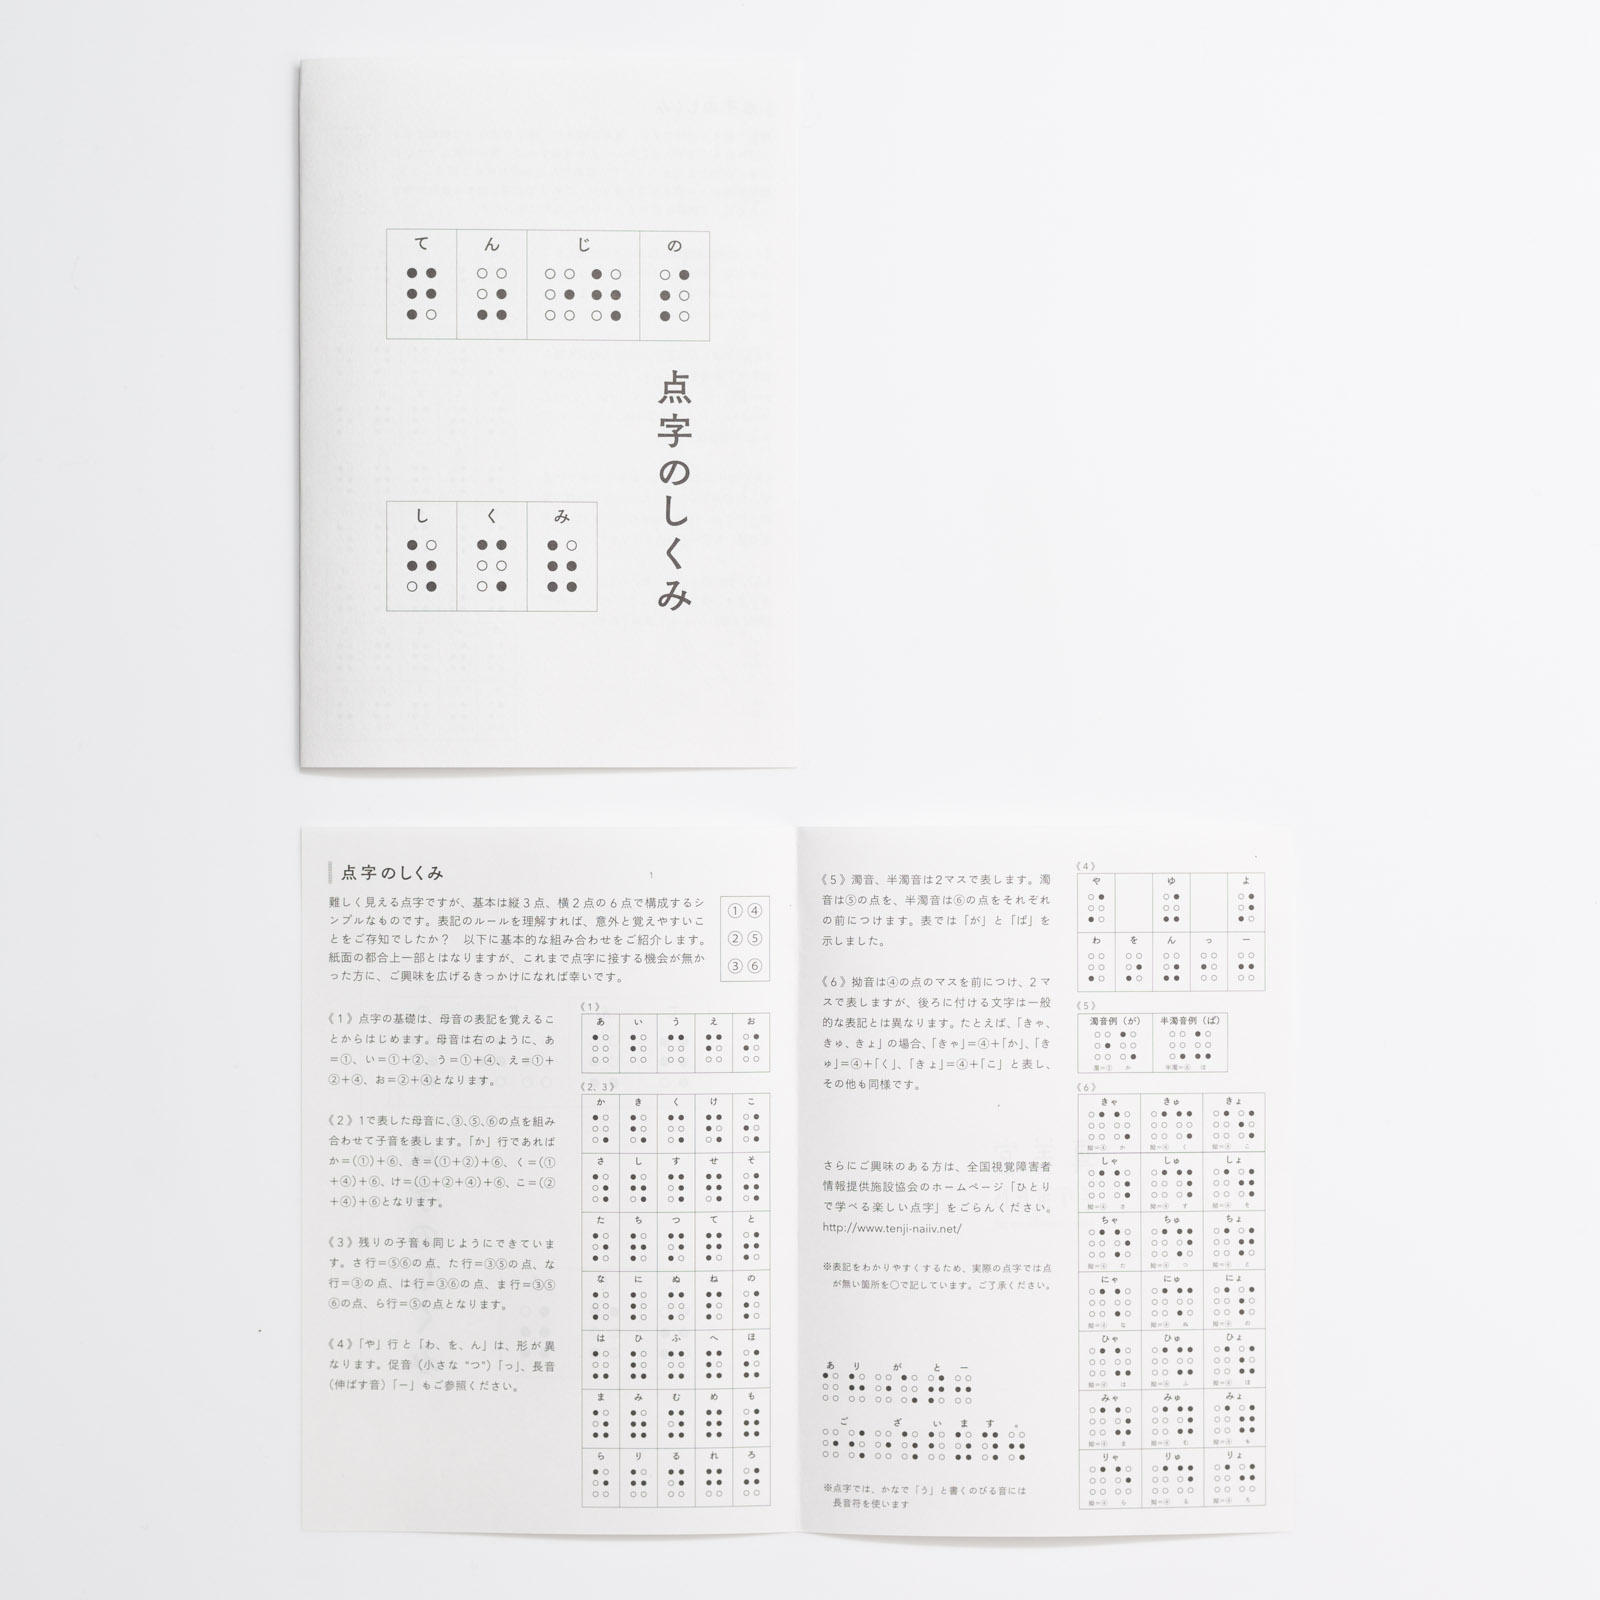 付録の小冊子「点字のしくみ」の写真。５０おんの表記の仕方など基本的な点字のしくみが記載されています